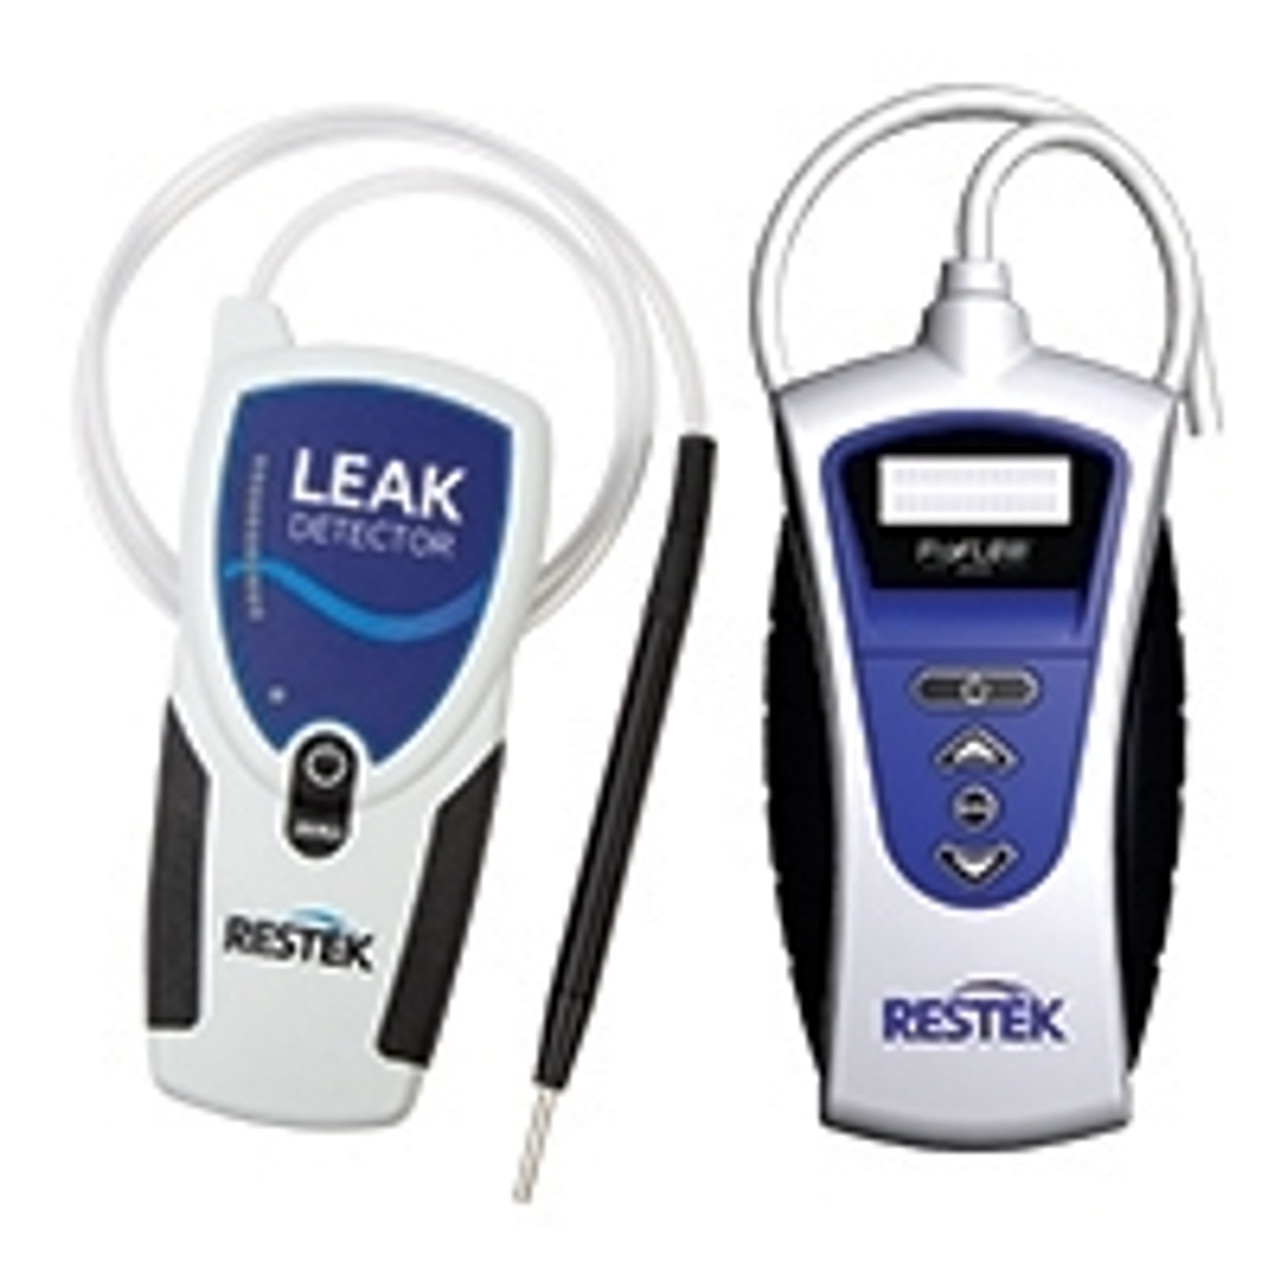 Combo Pack Restek ProFlow & Leak Detector